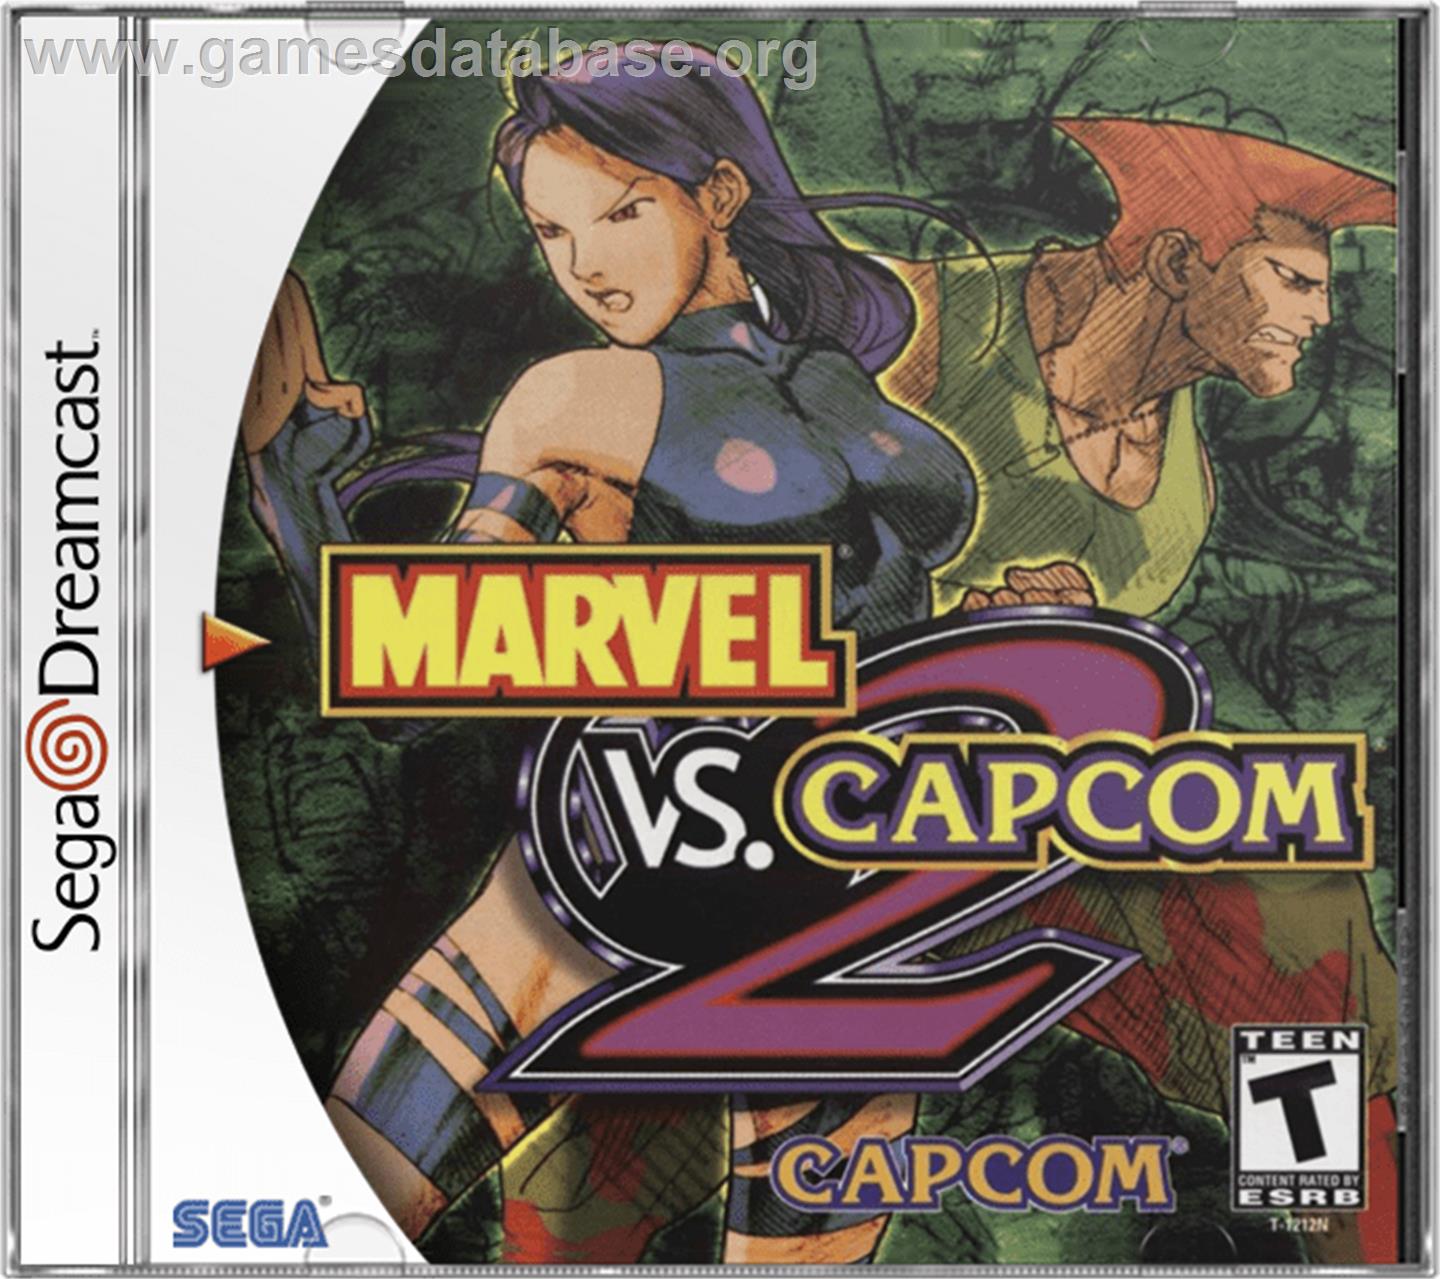 Marvel vs. Capcom 2: New Age of Heroes - Sega Dreamcast - Artwork - Box